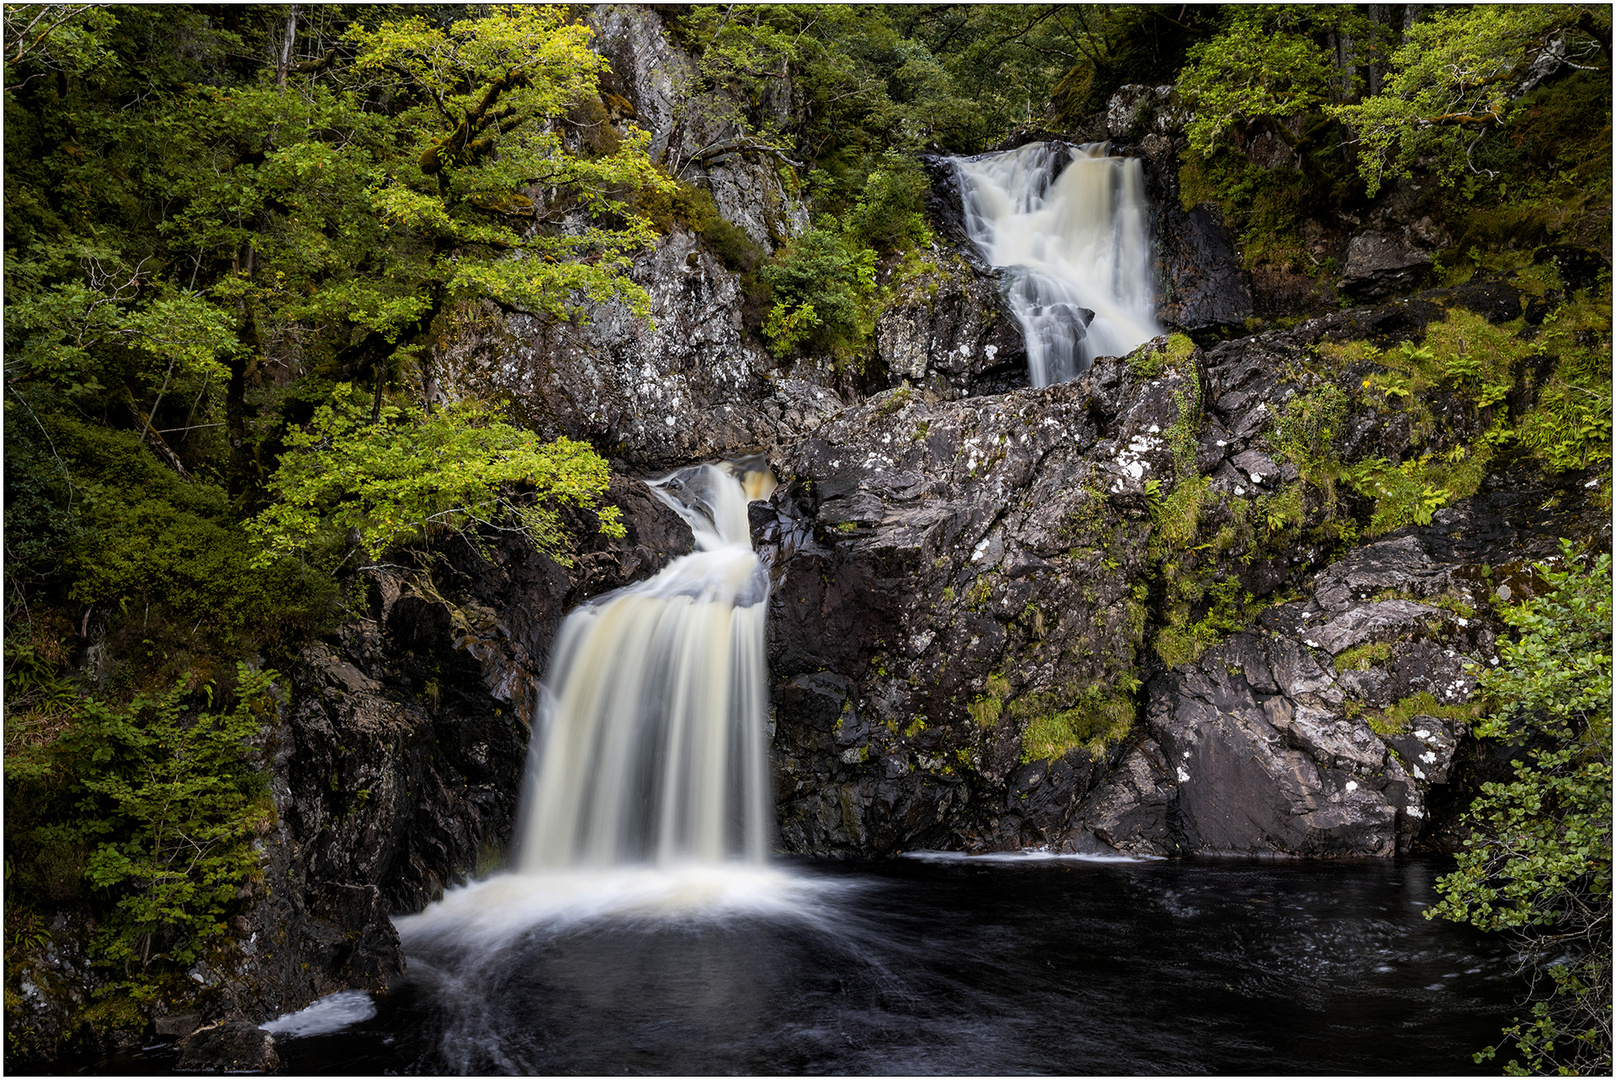 Loch Askaig Waterfall